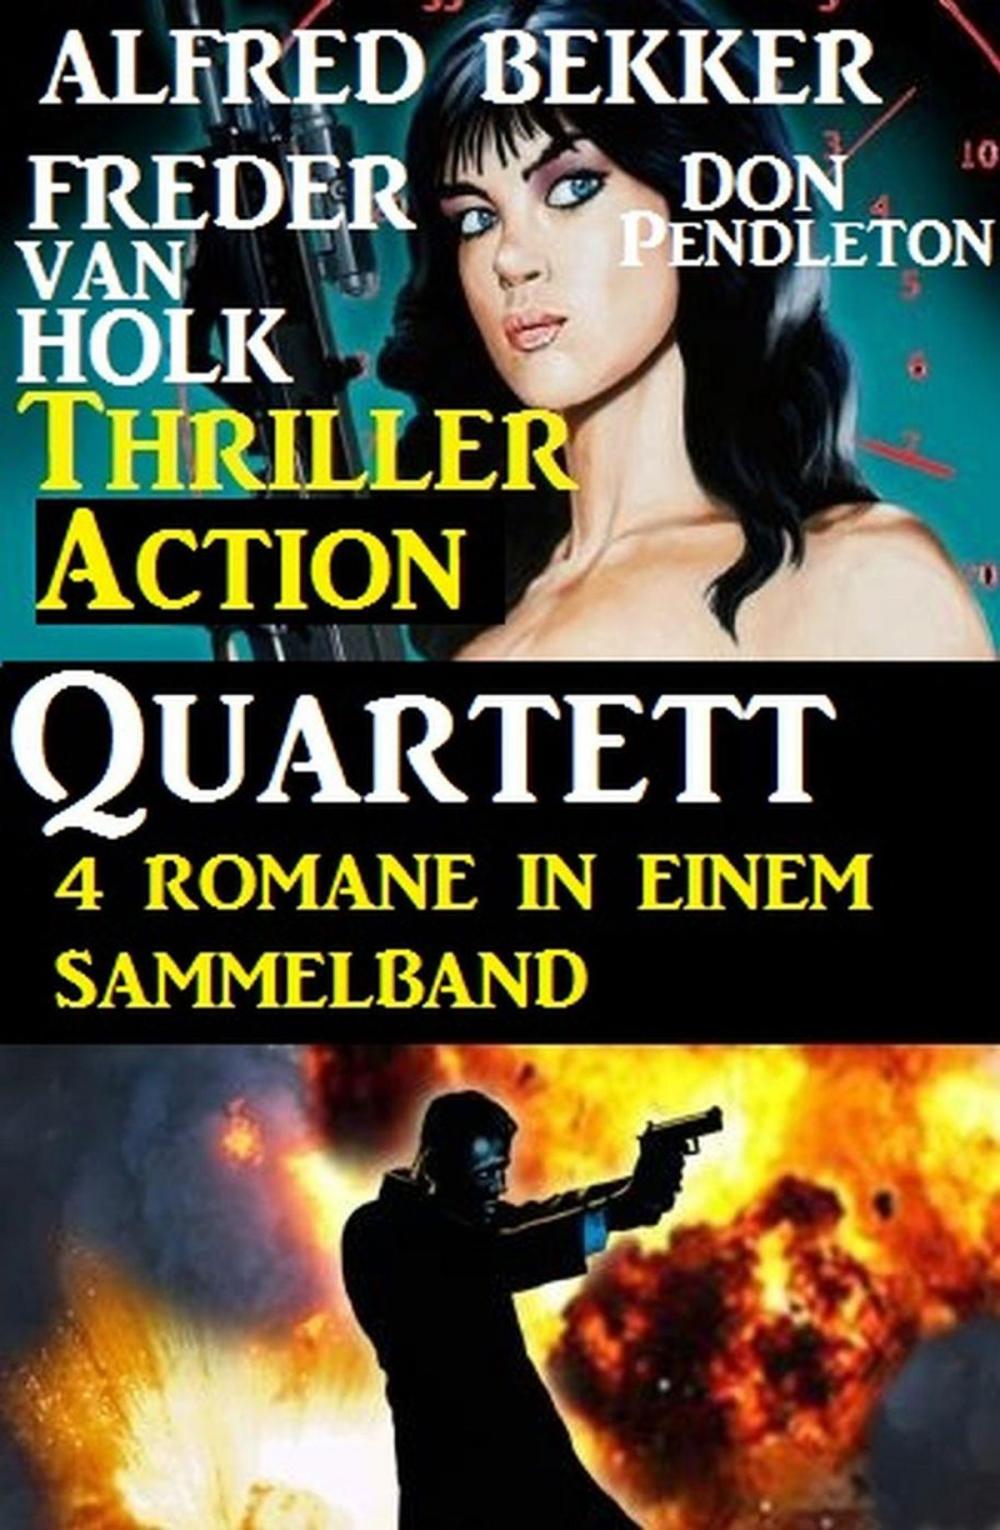 Big bigCover of Thriller Action Quartett November 2018 – 4 Romane in einem Sammelband